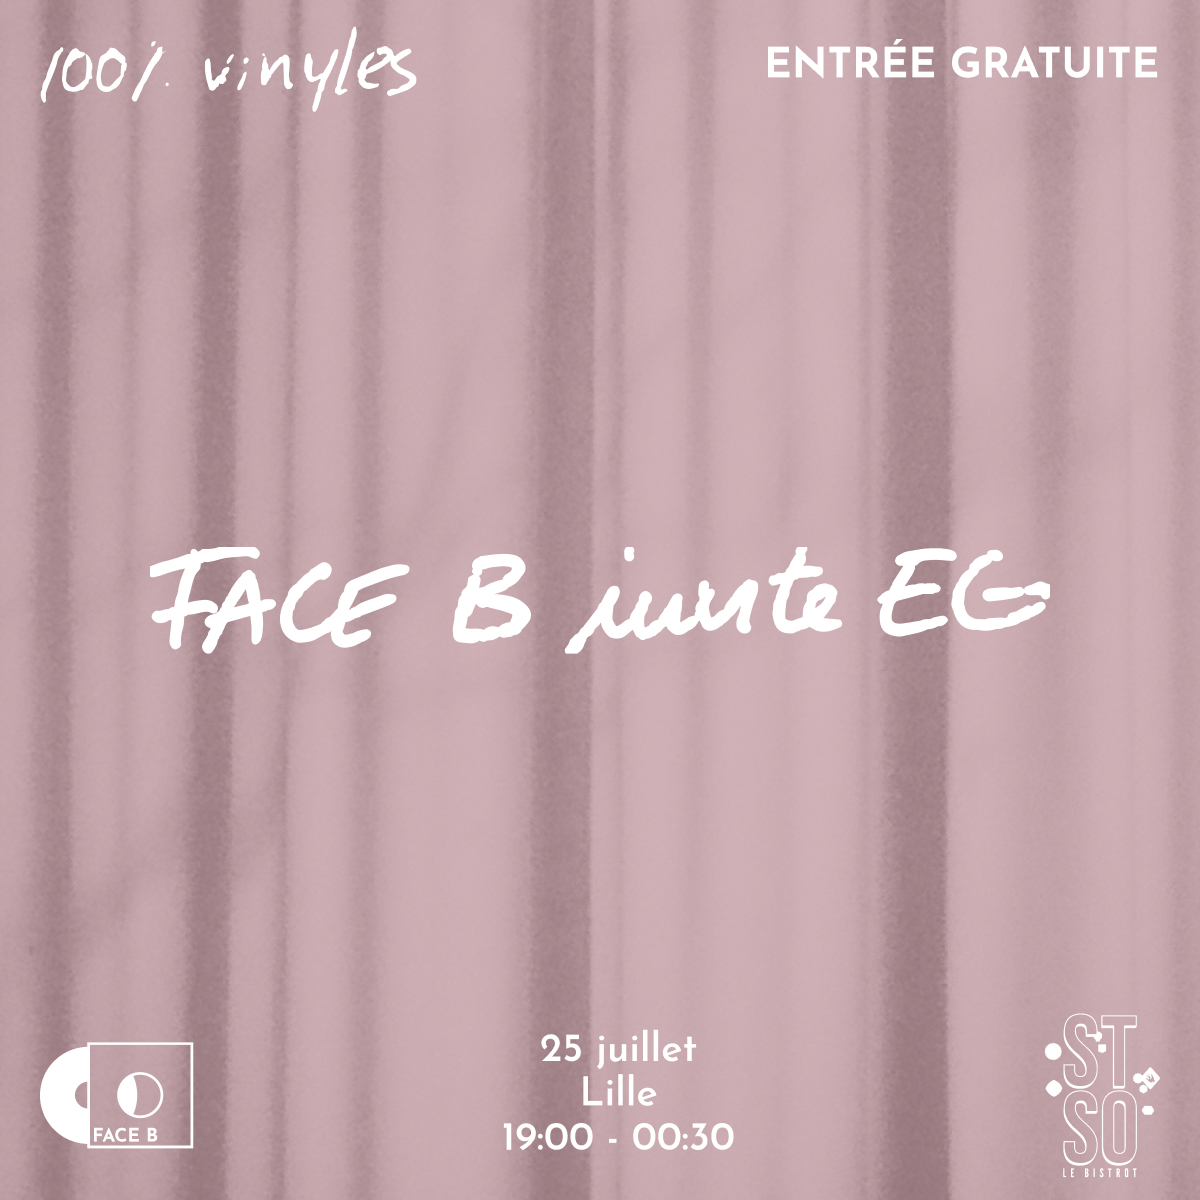 Face B invite EG